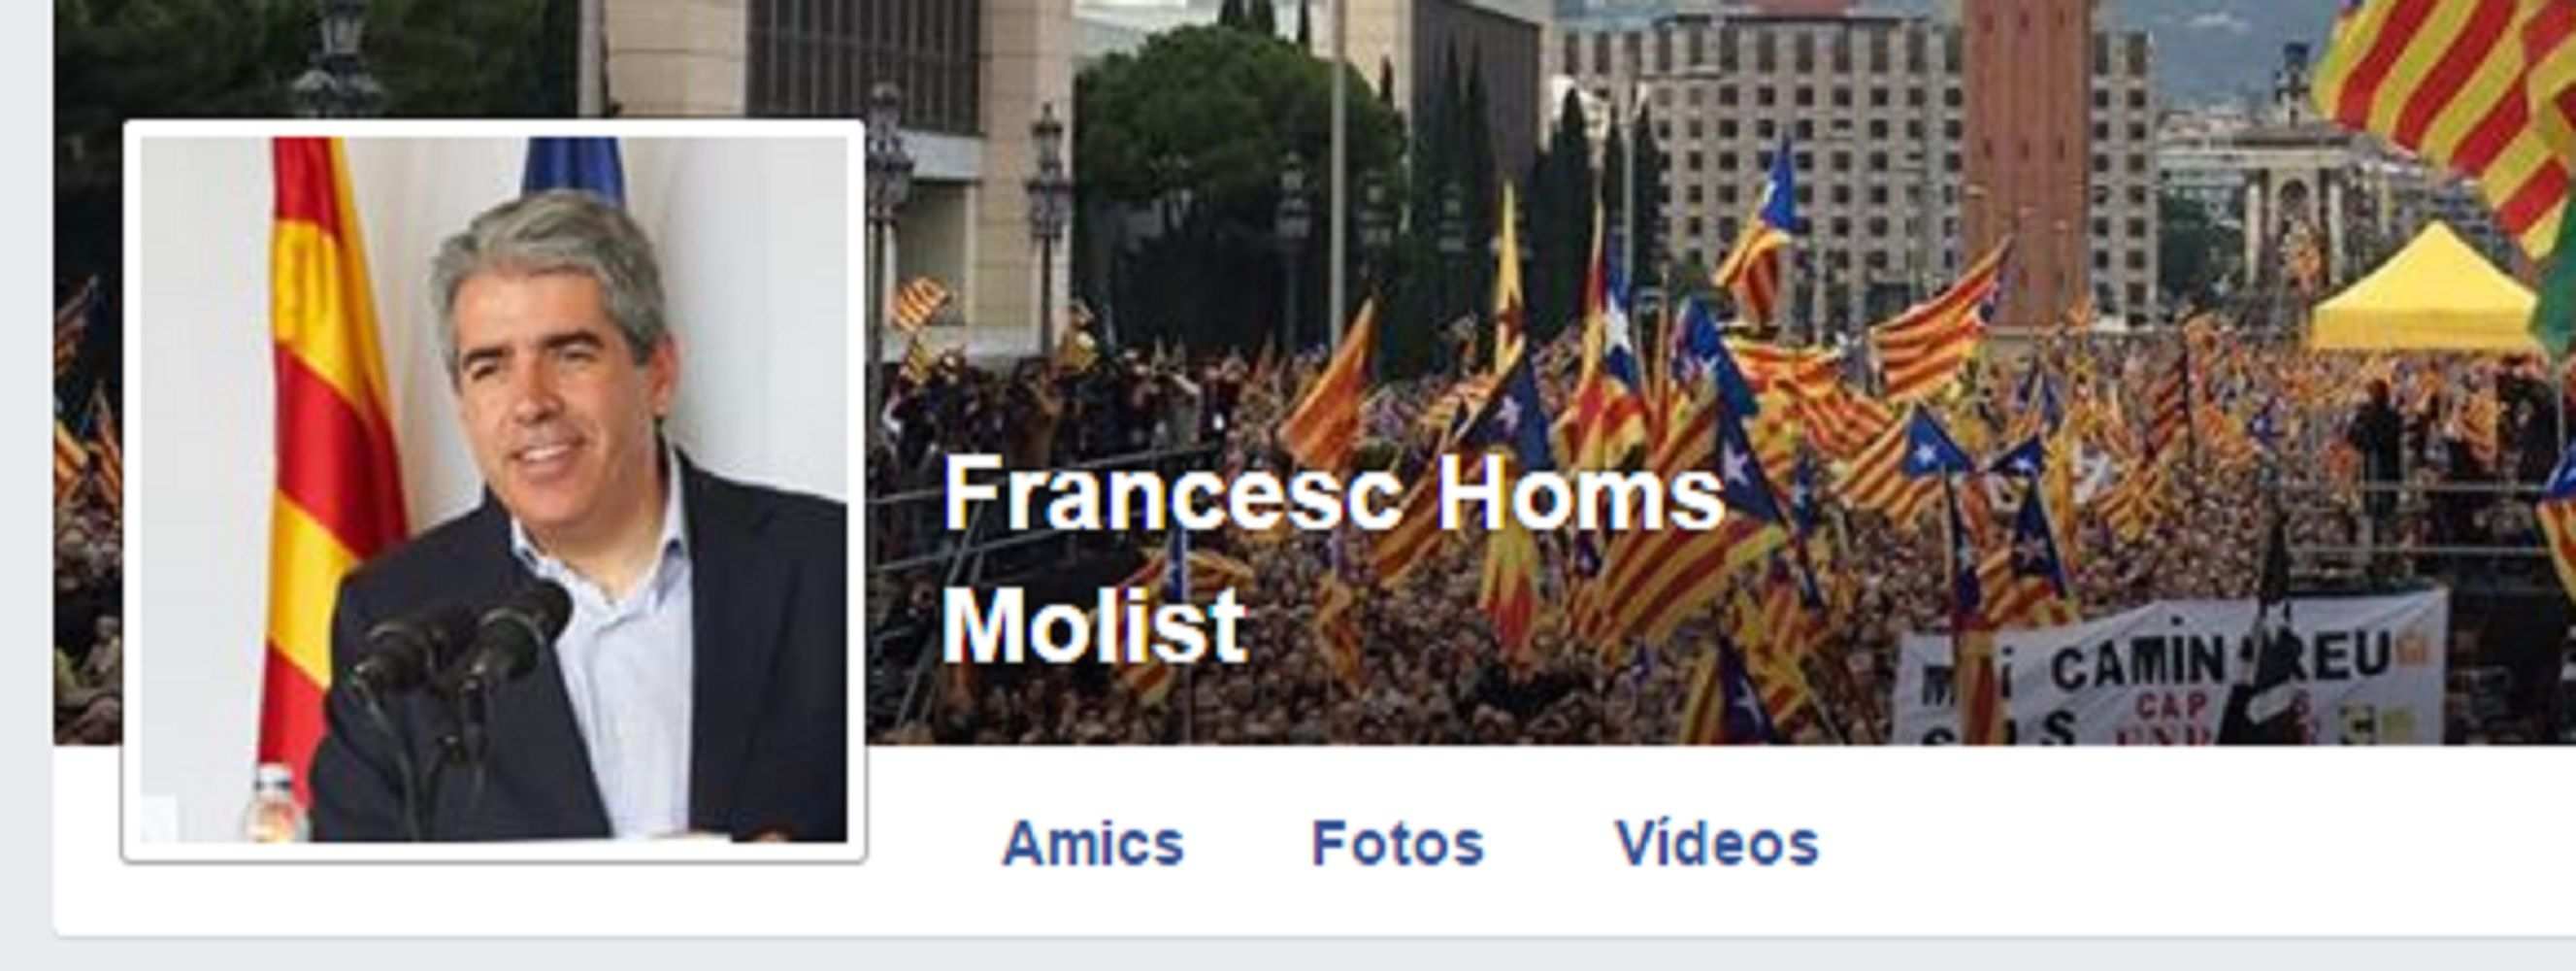 Francesc Homs estrena Facebook y hará un "dietario de un imputado por poner urnas"